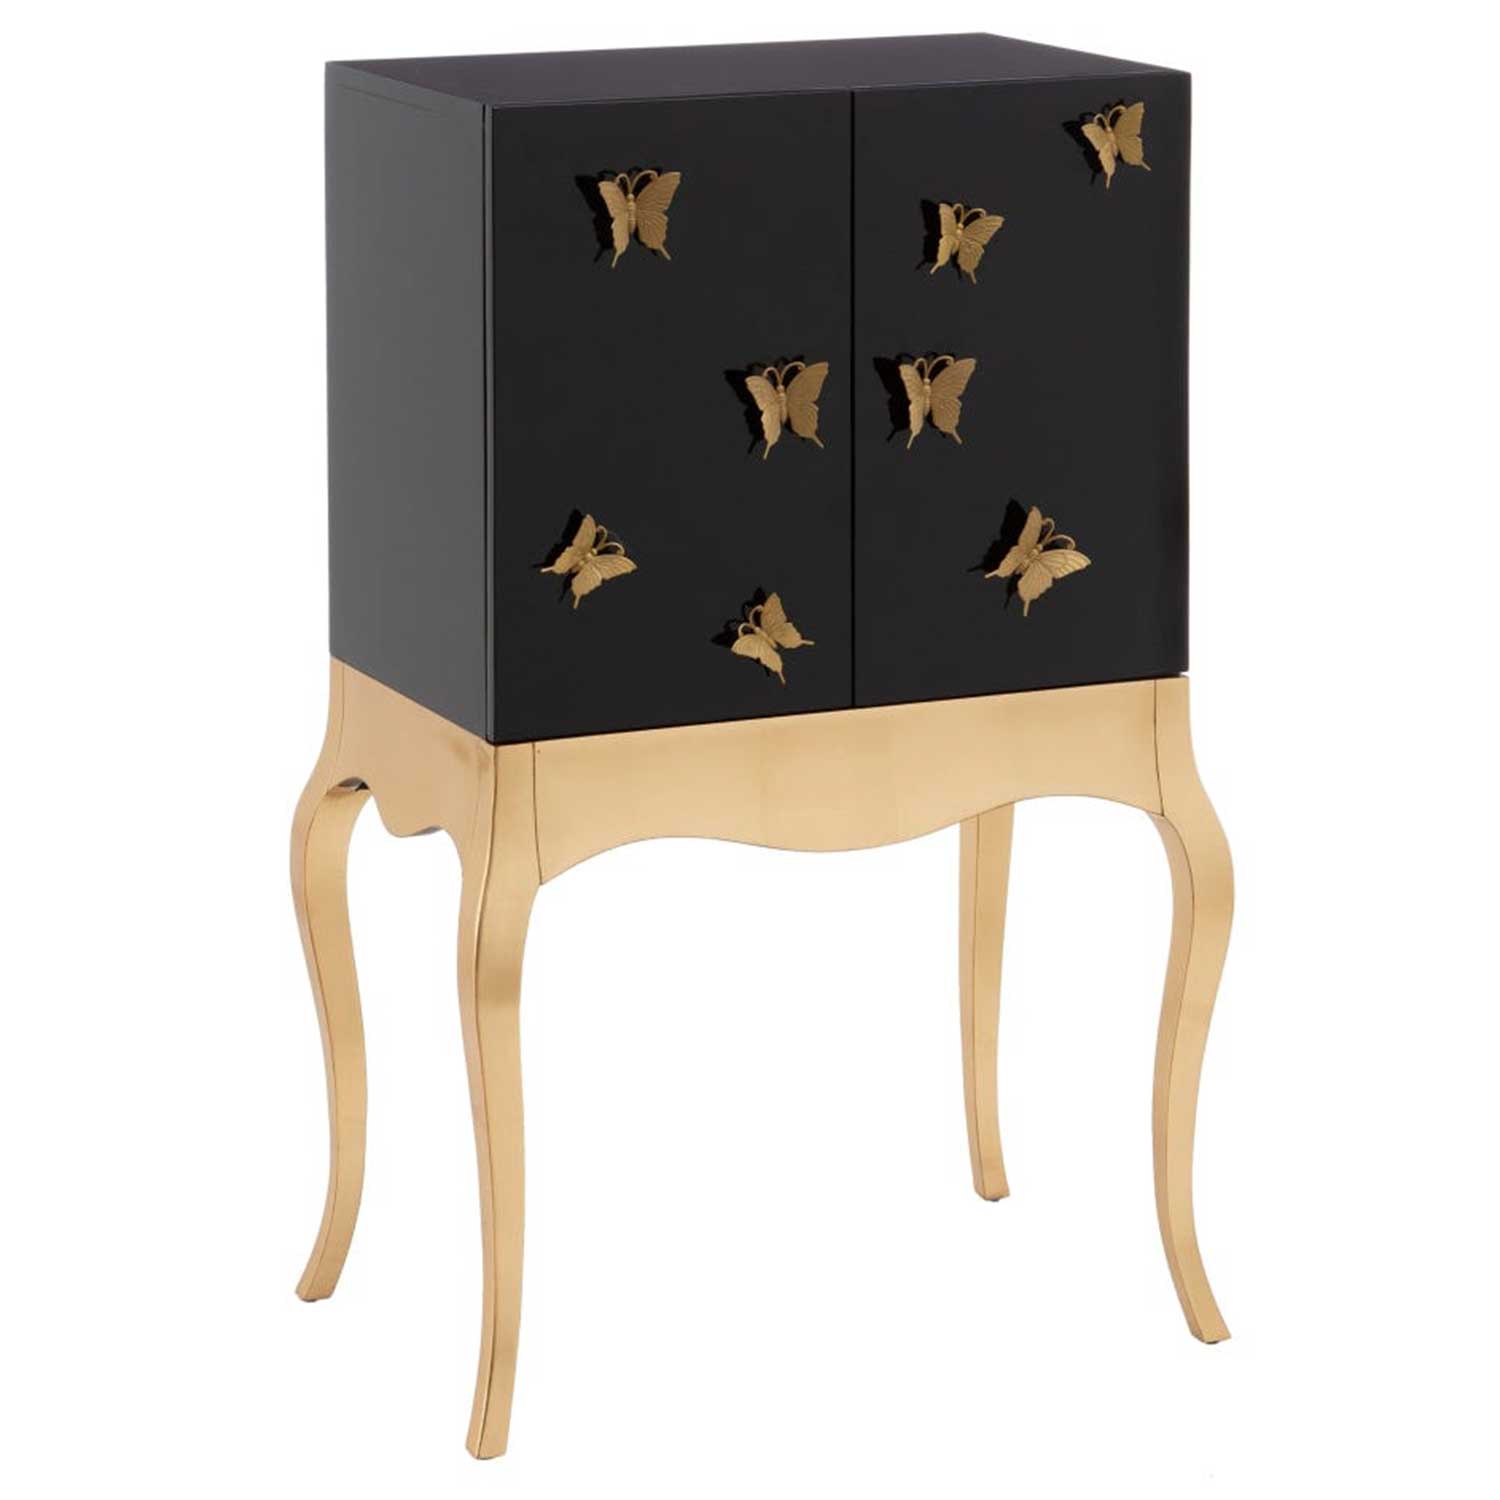 Armario - Cabinet de de Abeto con Mariposas doradas en DM, 75 x 50 x 120 cm - TessaHome | Tu tienda de mobiliario online